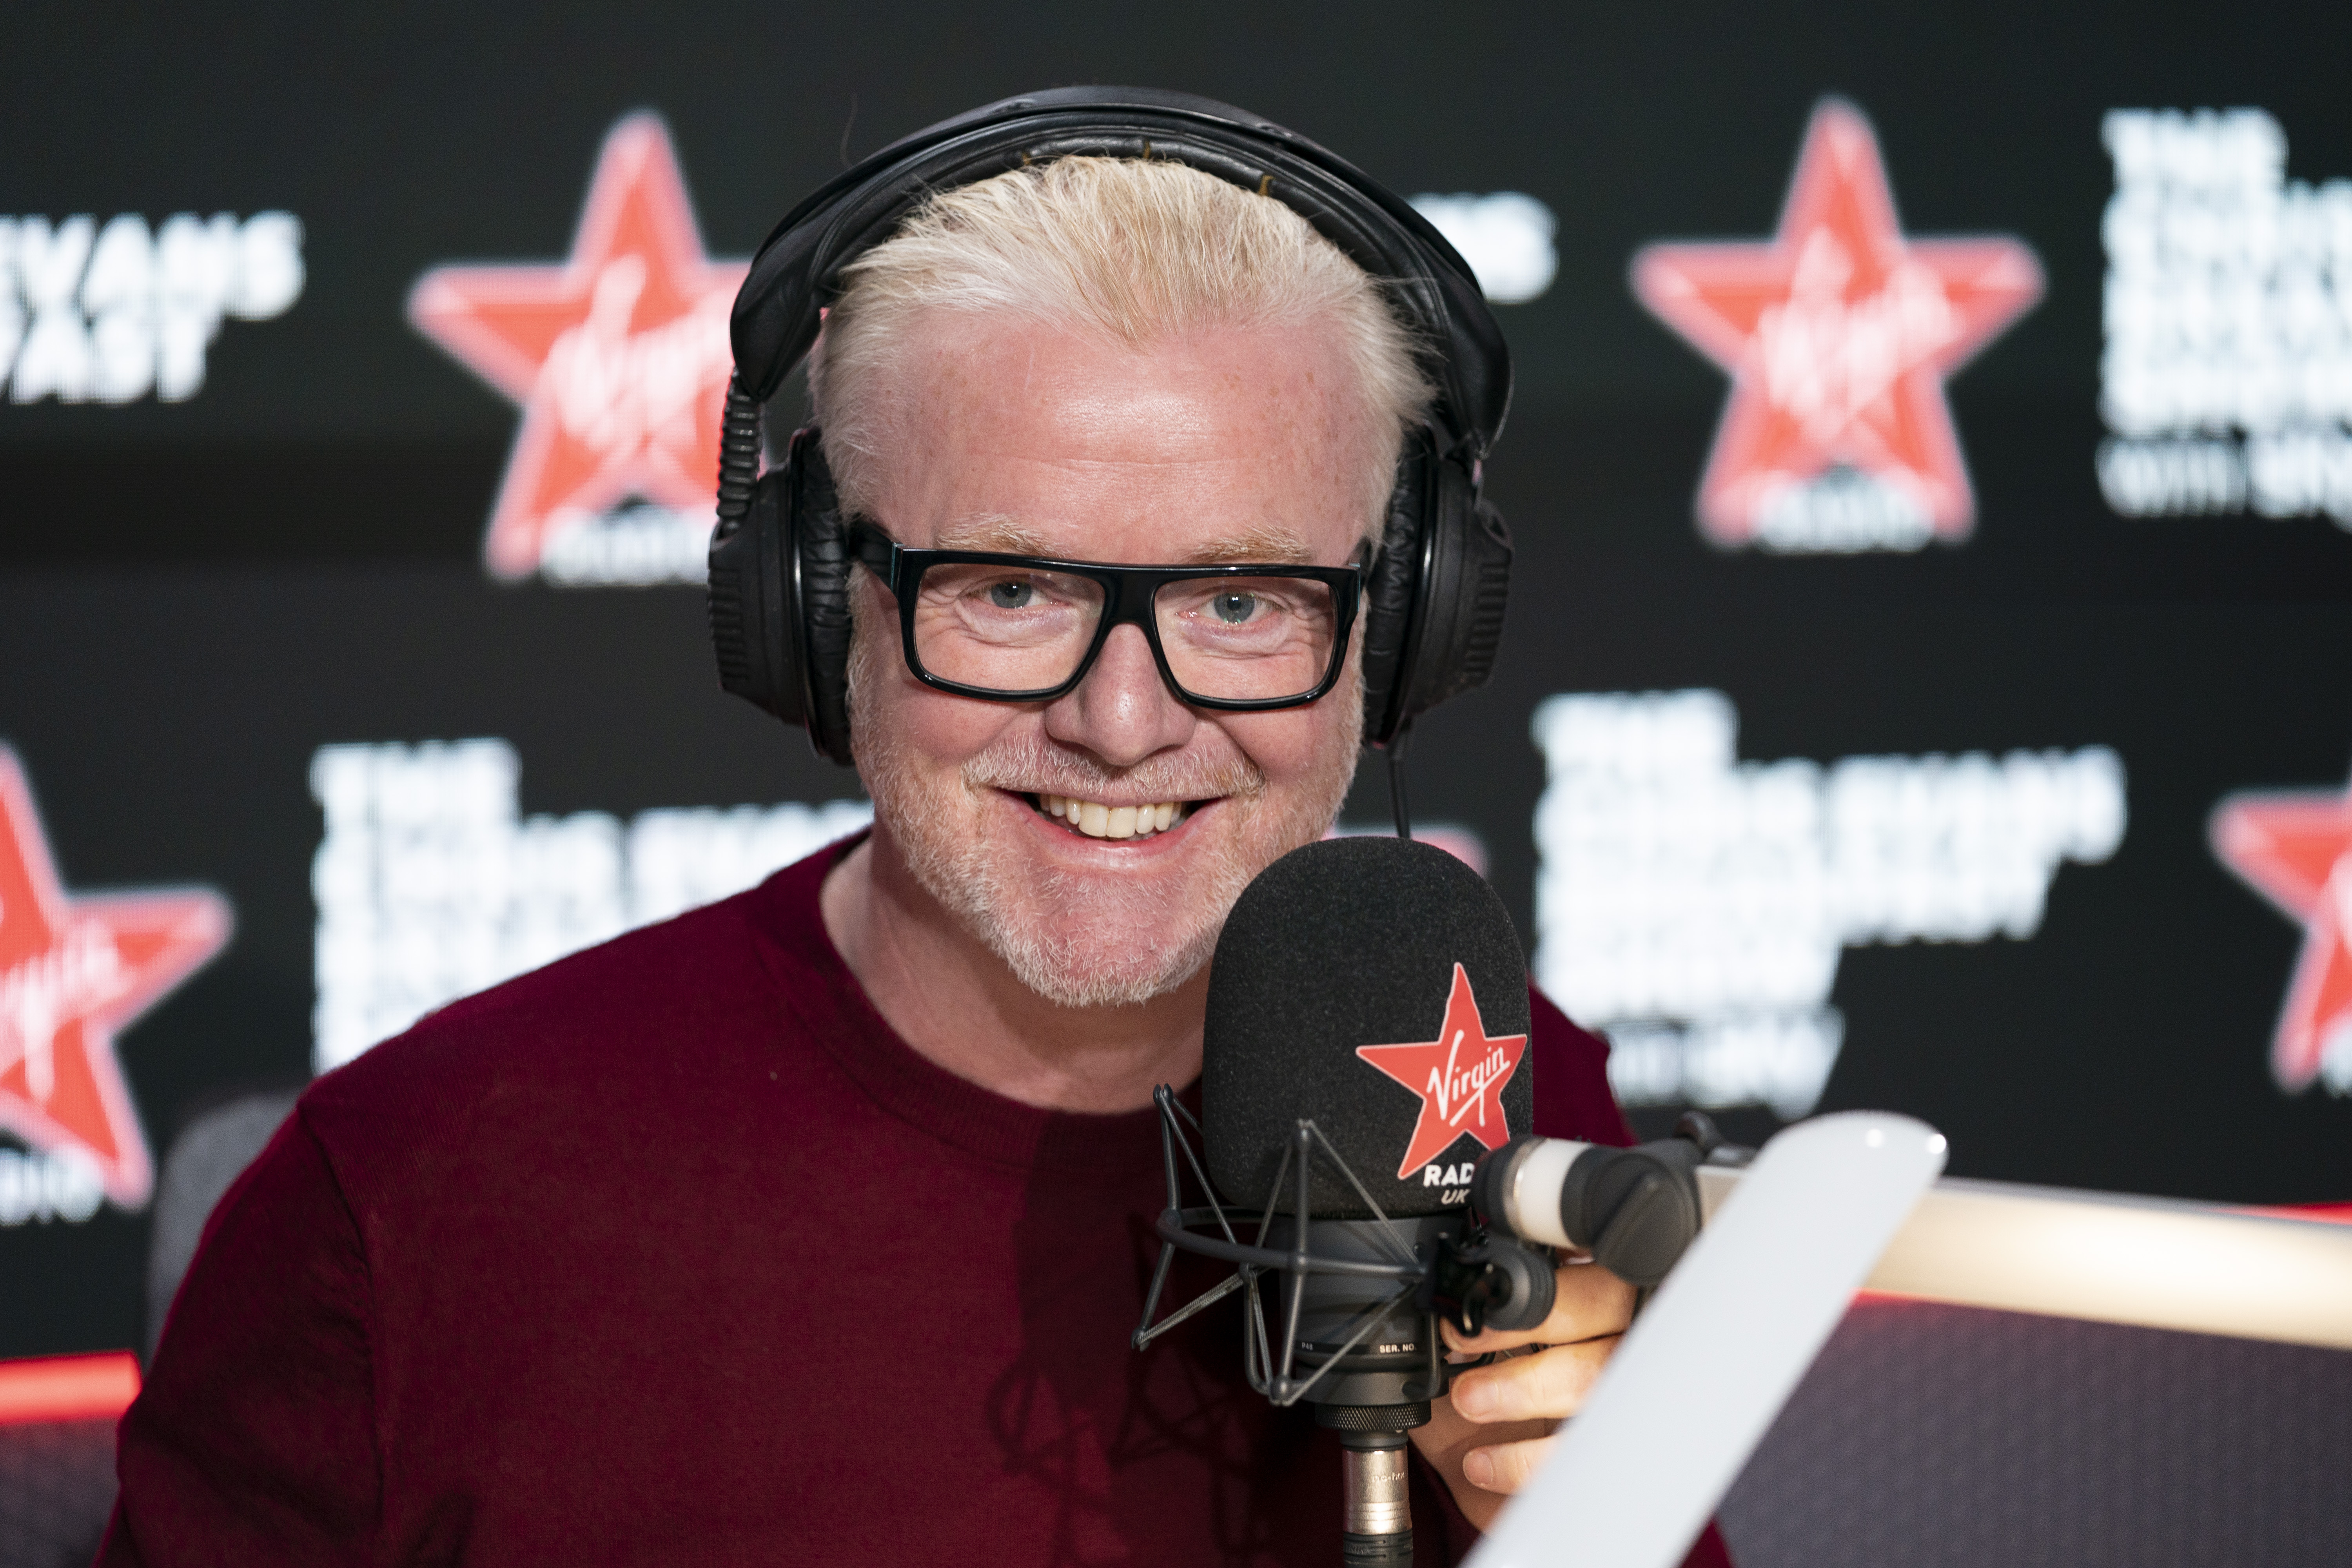 Chris gab die Neuigkeiten in seiner Frühmorgensendung bei Virgin Radio bekannt